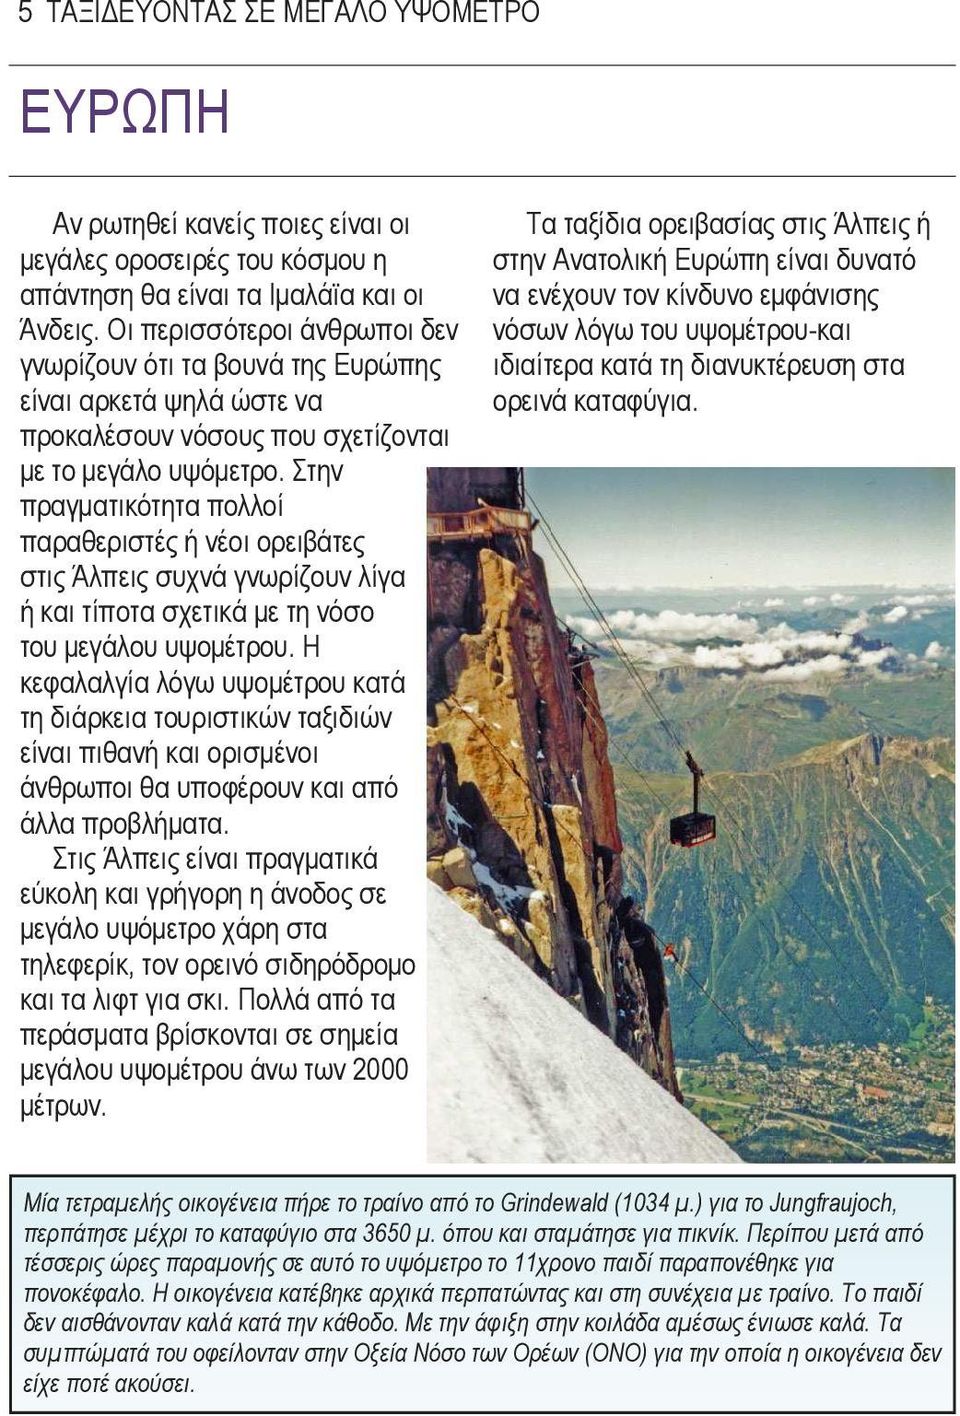 Στην πραγµατικότητα πολλοί παραθεριστές ή νέοι ορειβάτες στις Άλπεις συχνά γνωρίζουν λίγα ή και τίποτα σχετικά µε τη νόσο του µεγάλου υψοµέτρου.